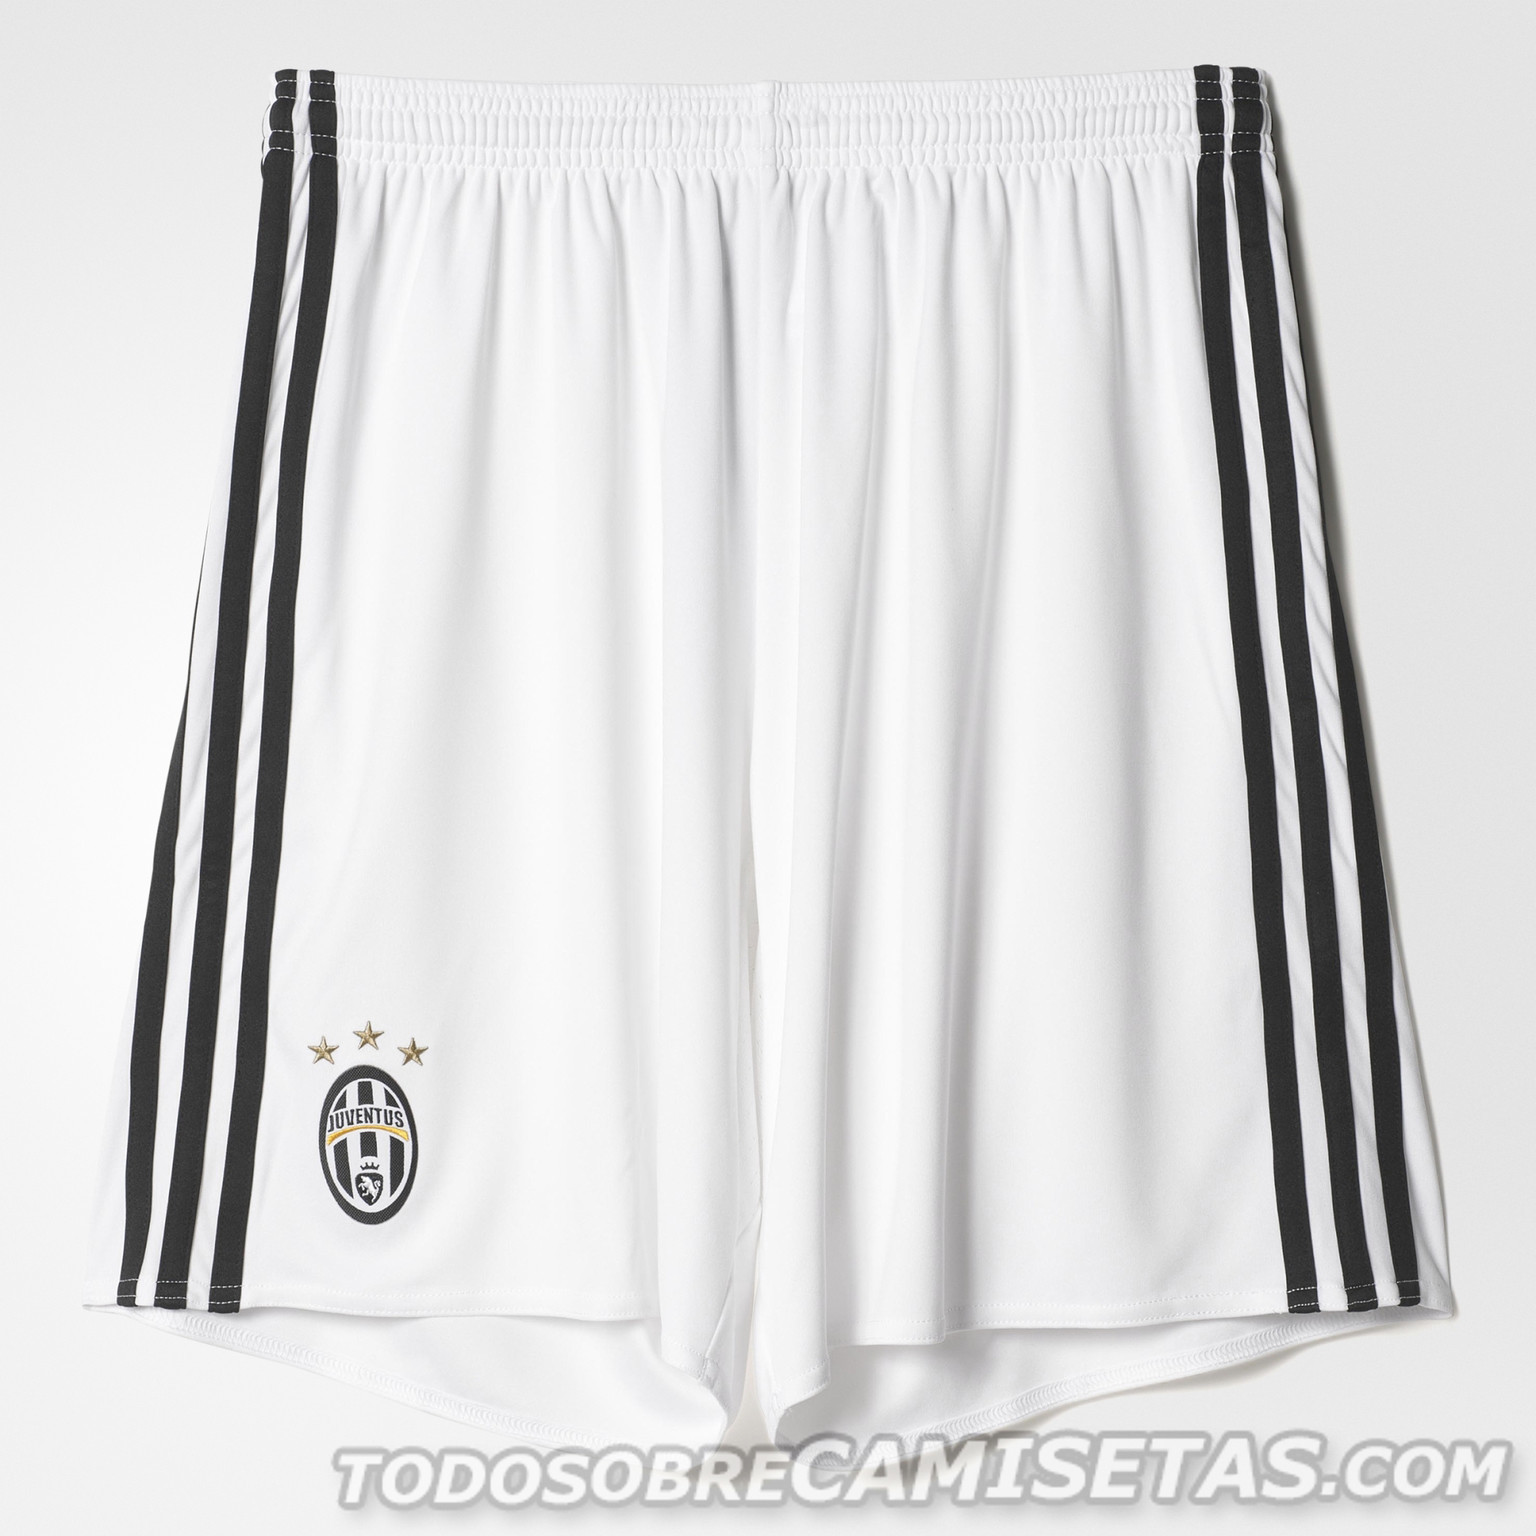 Juventus-2016-17-adidas-new-third-kit-11.jpg